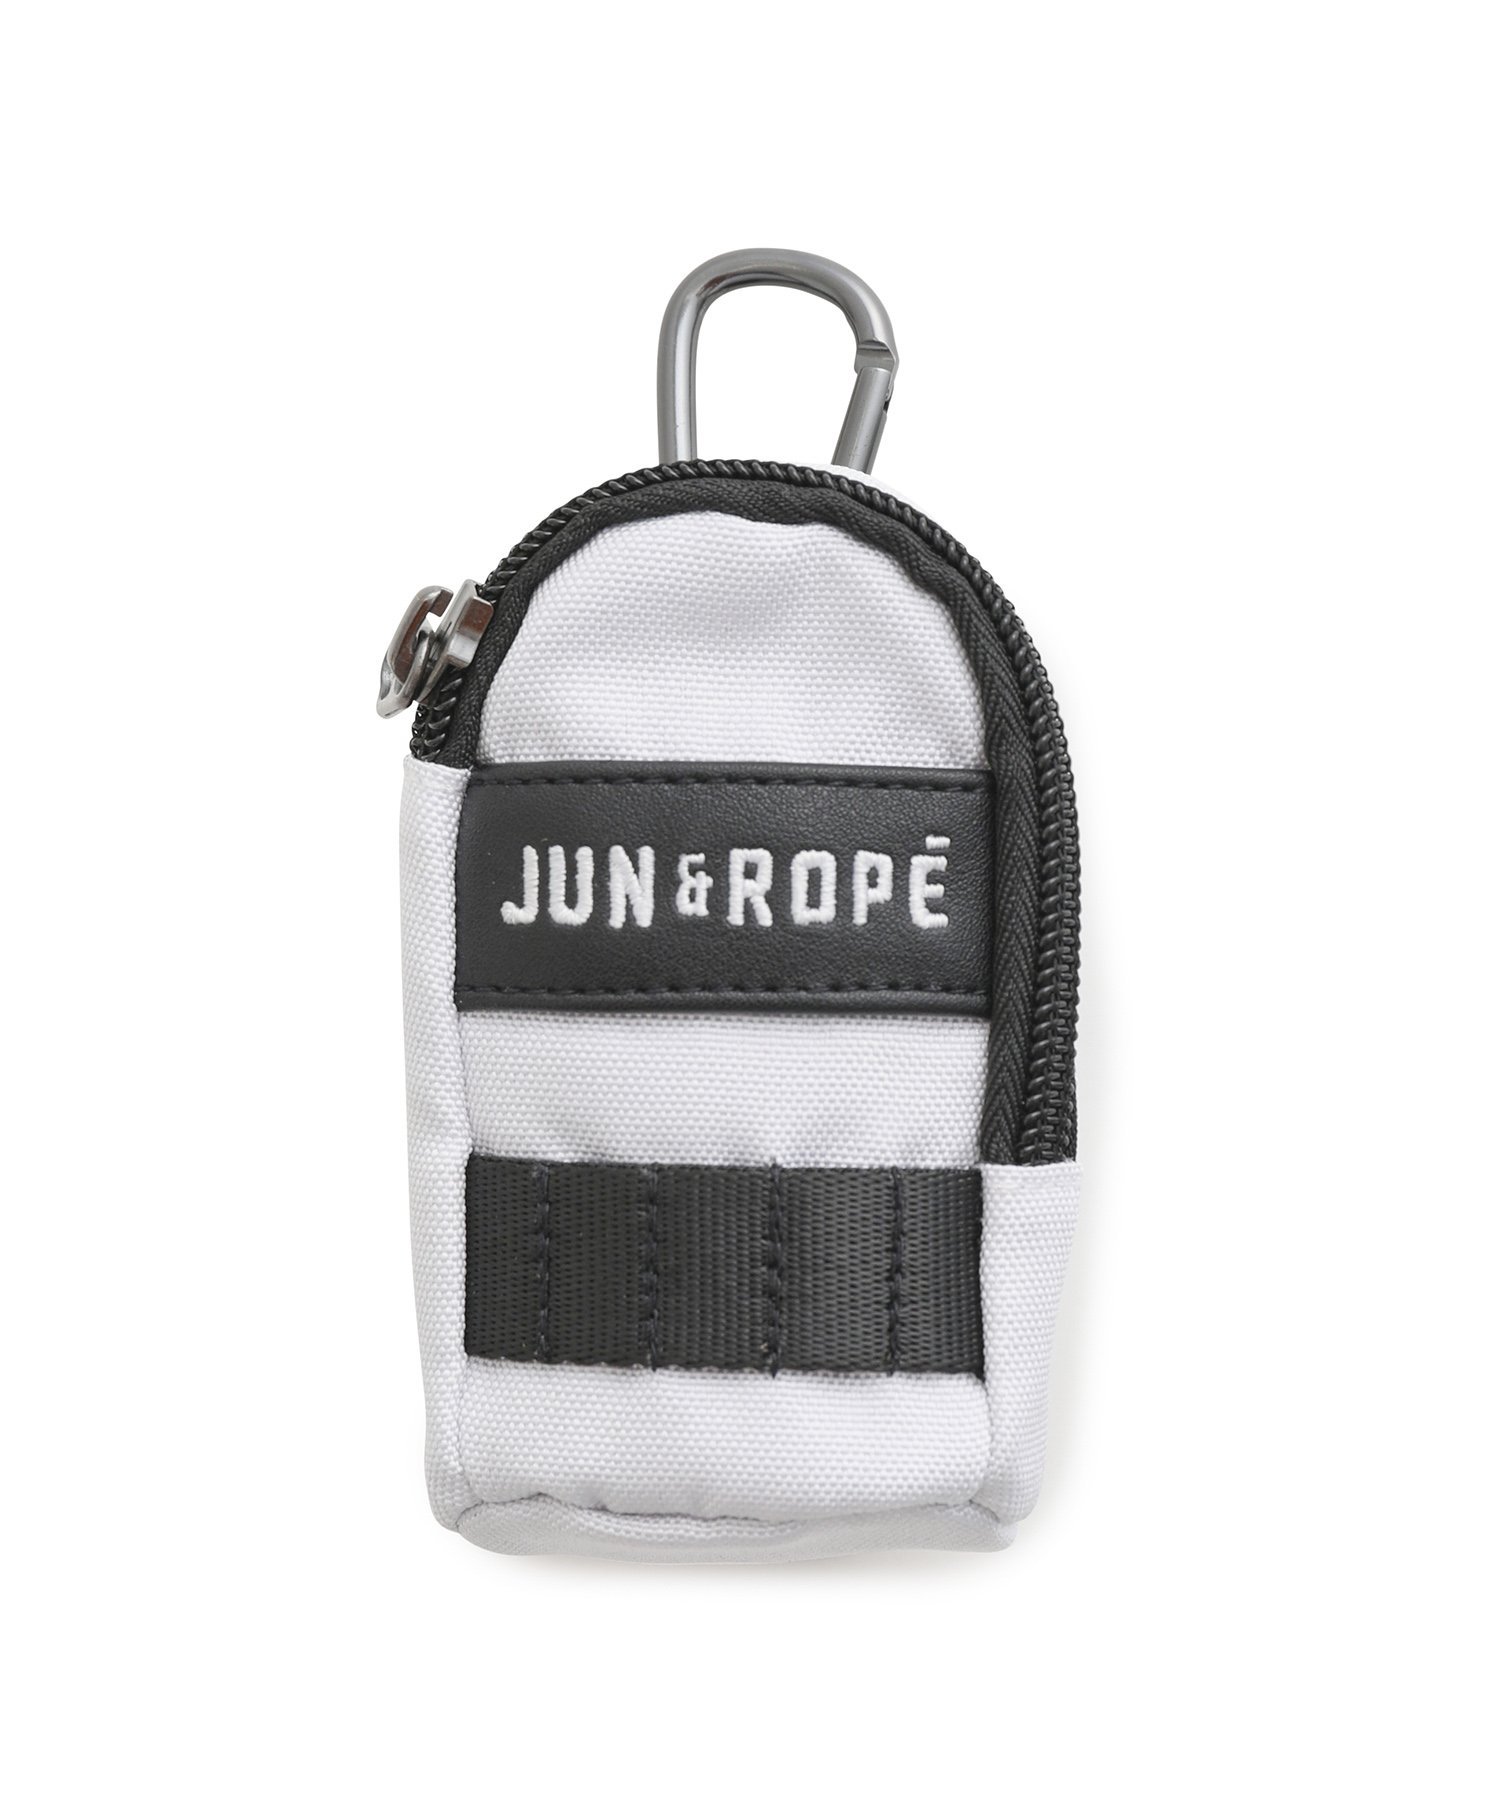 JUN&ROPE'(ジュンアンドロペ)のファッションアイテム一覧 | Rakuten 